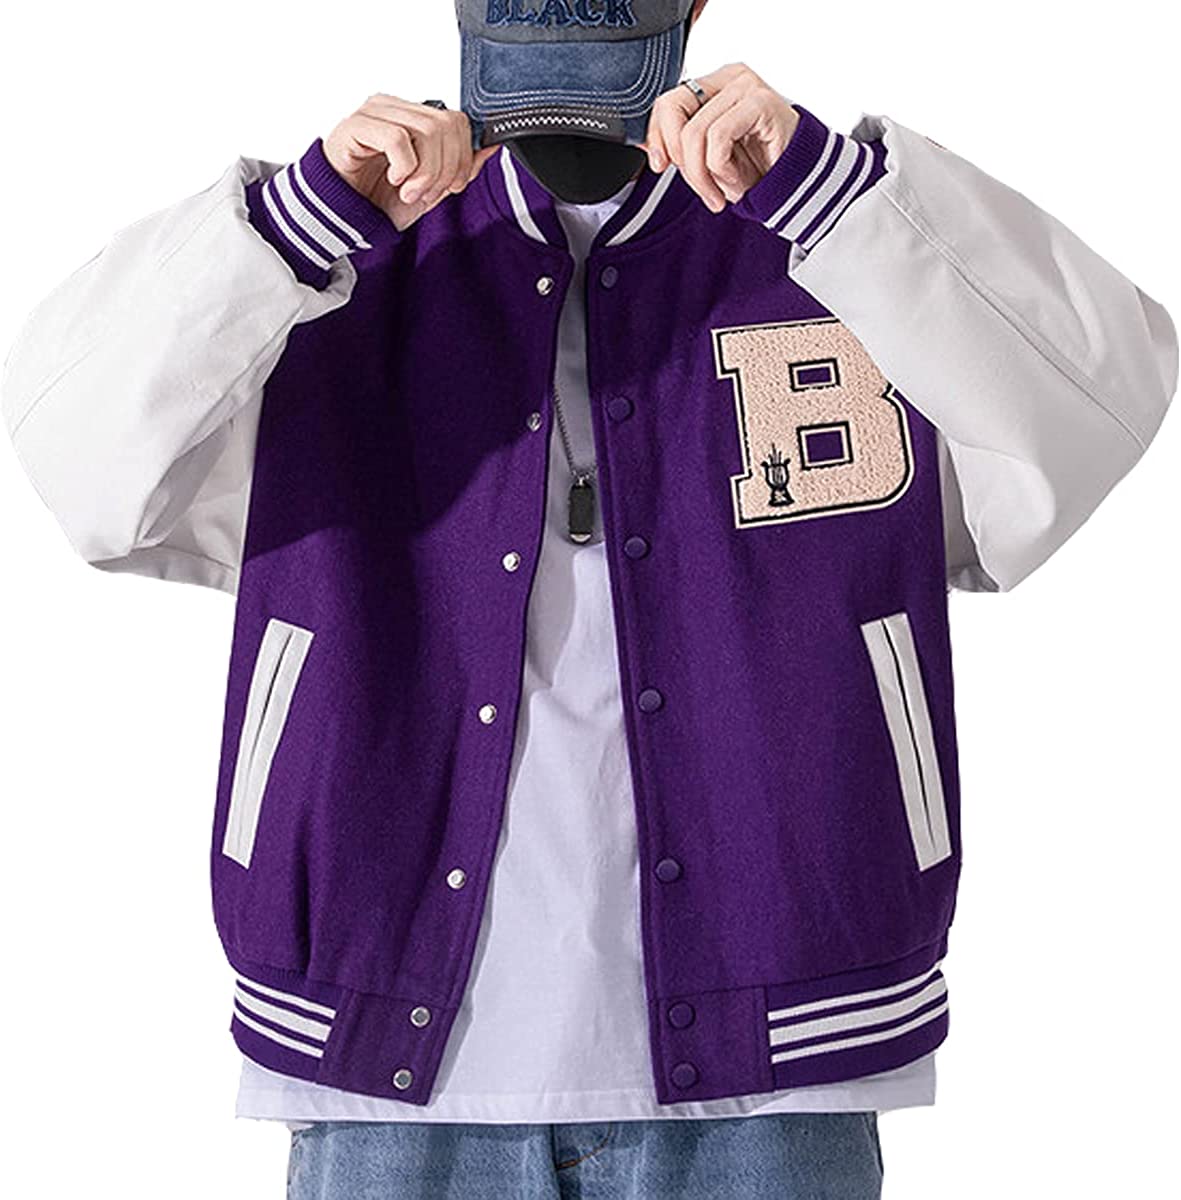 Moshtashio Mens Varsity College Jacket Baseball Bomber Jacket Vintage Sweatshirt Casual Unisex Streetwear Coats with Patch